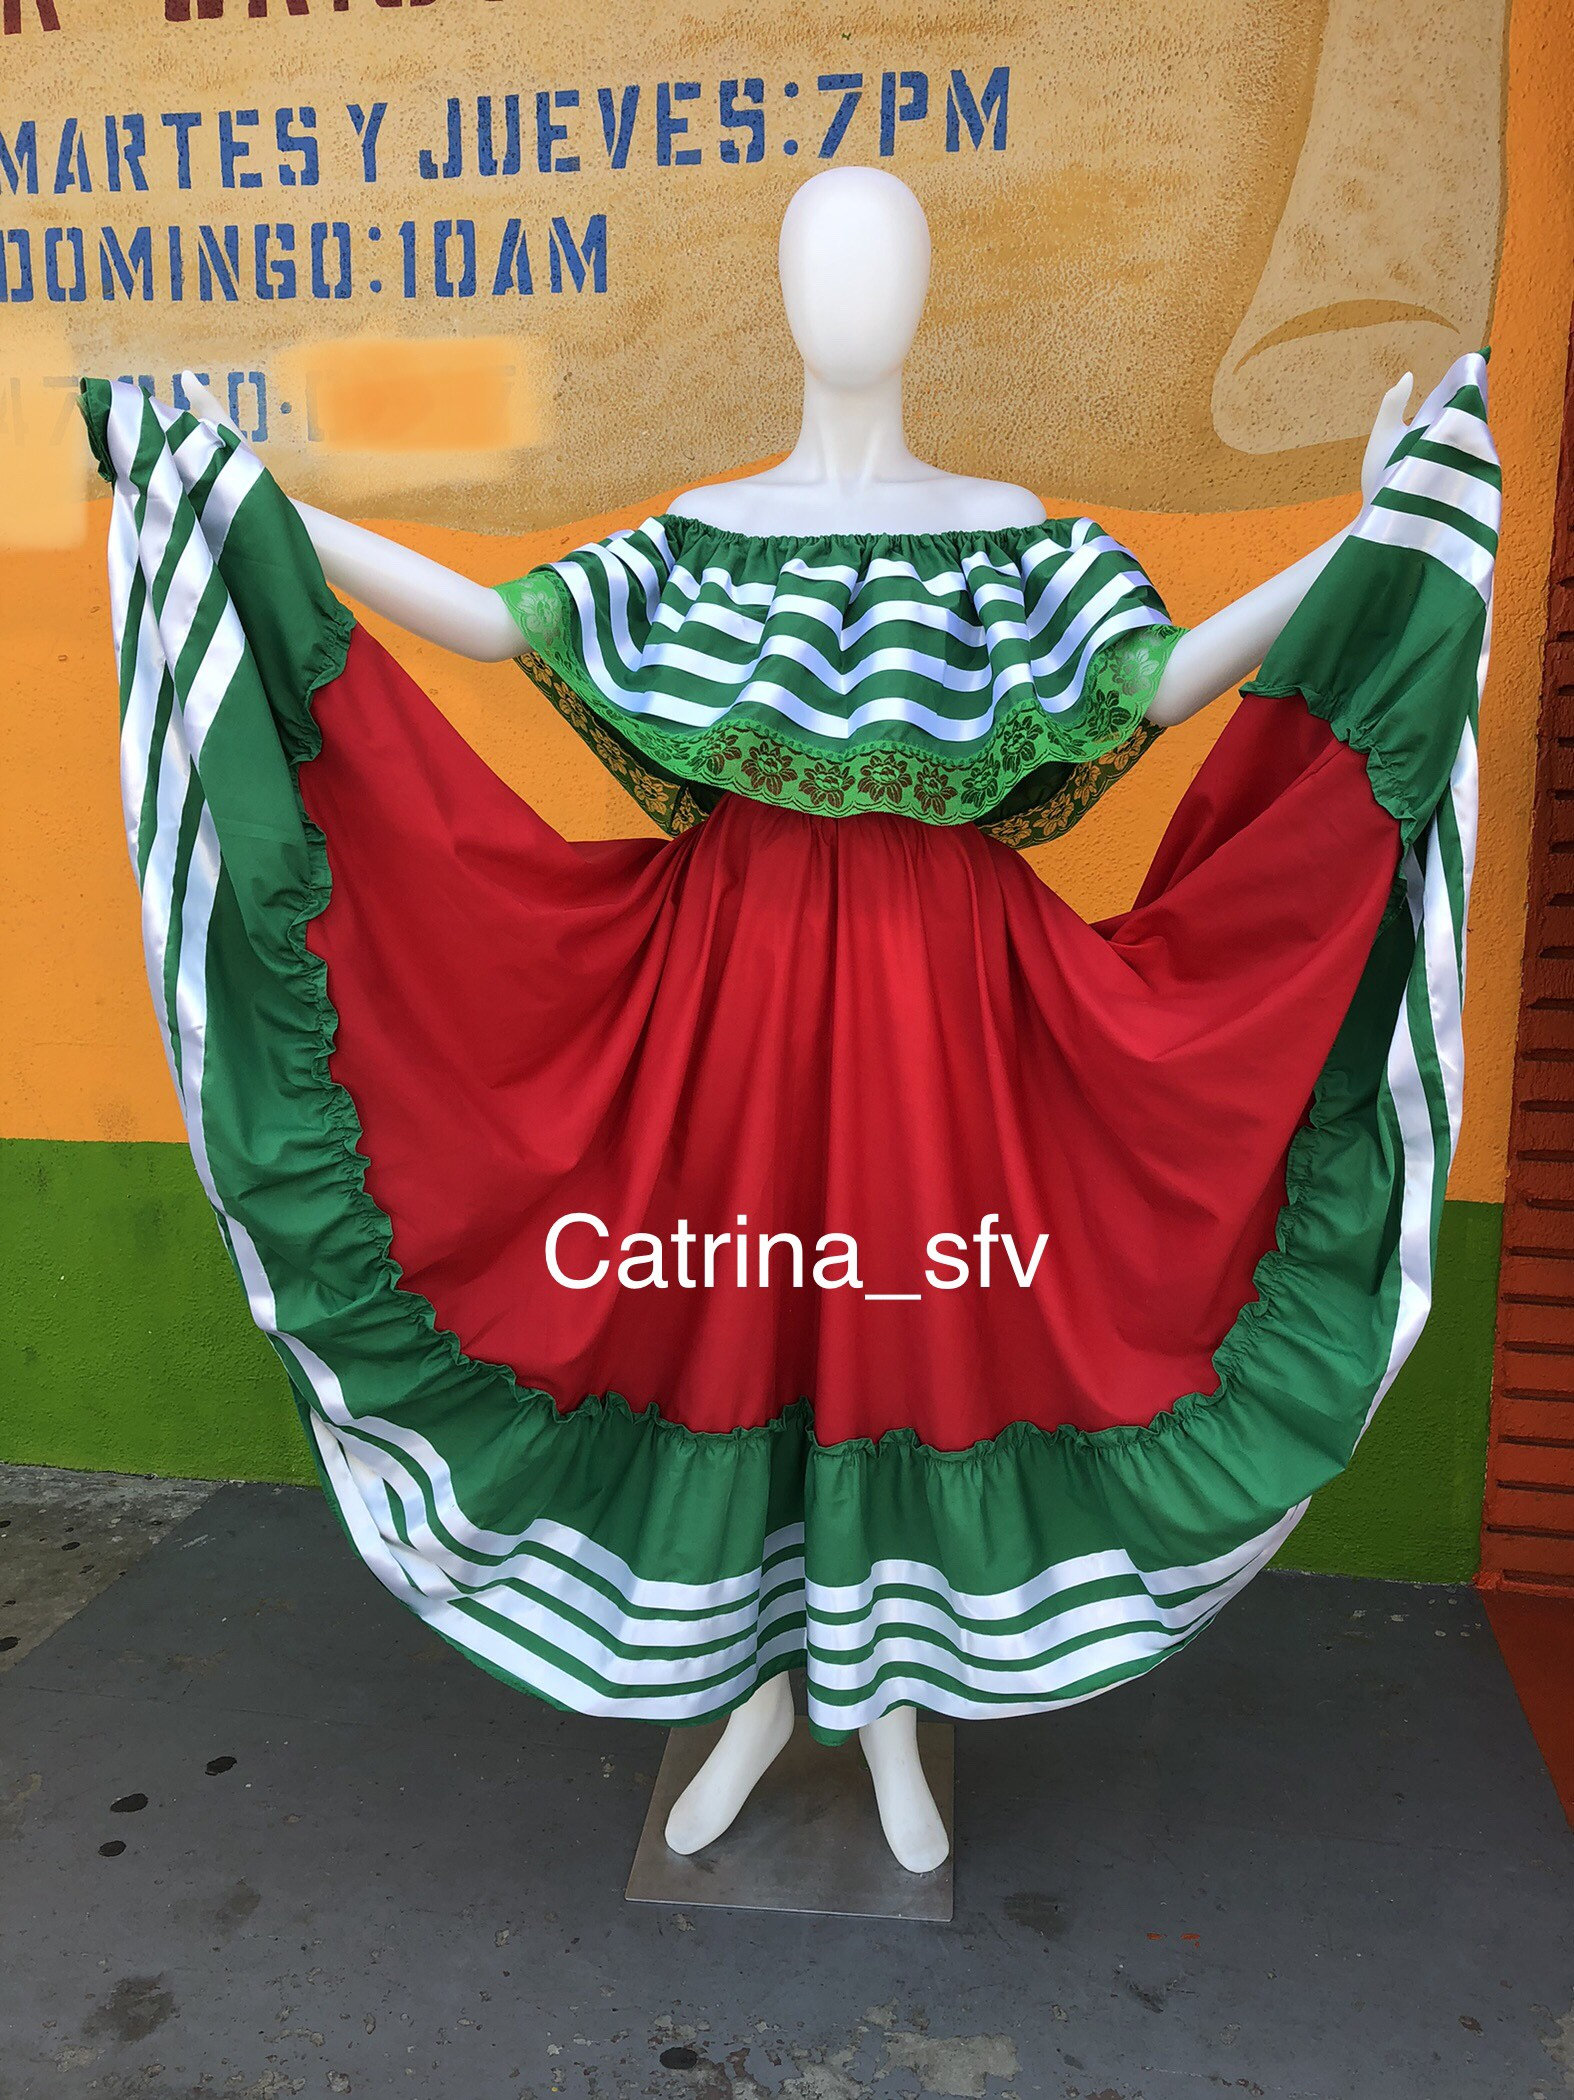 de falda mexicana verde blanco rojo, off the shoulders, traje vestido típico, ENVIO GRATIS EN ESTADOS UNIDOS